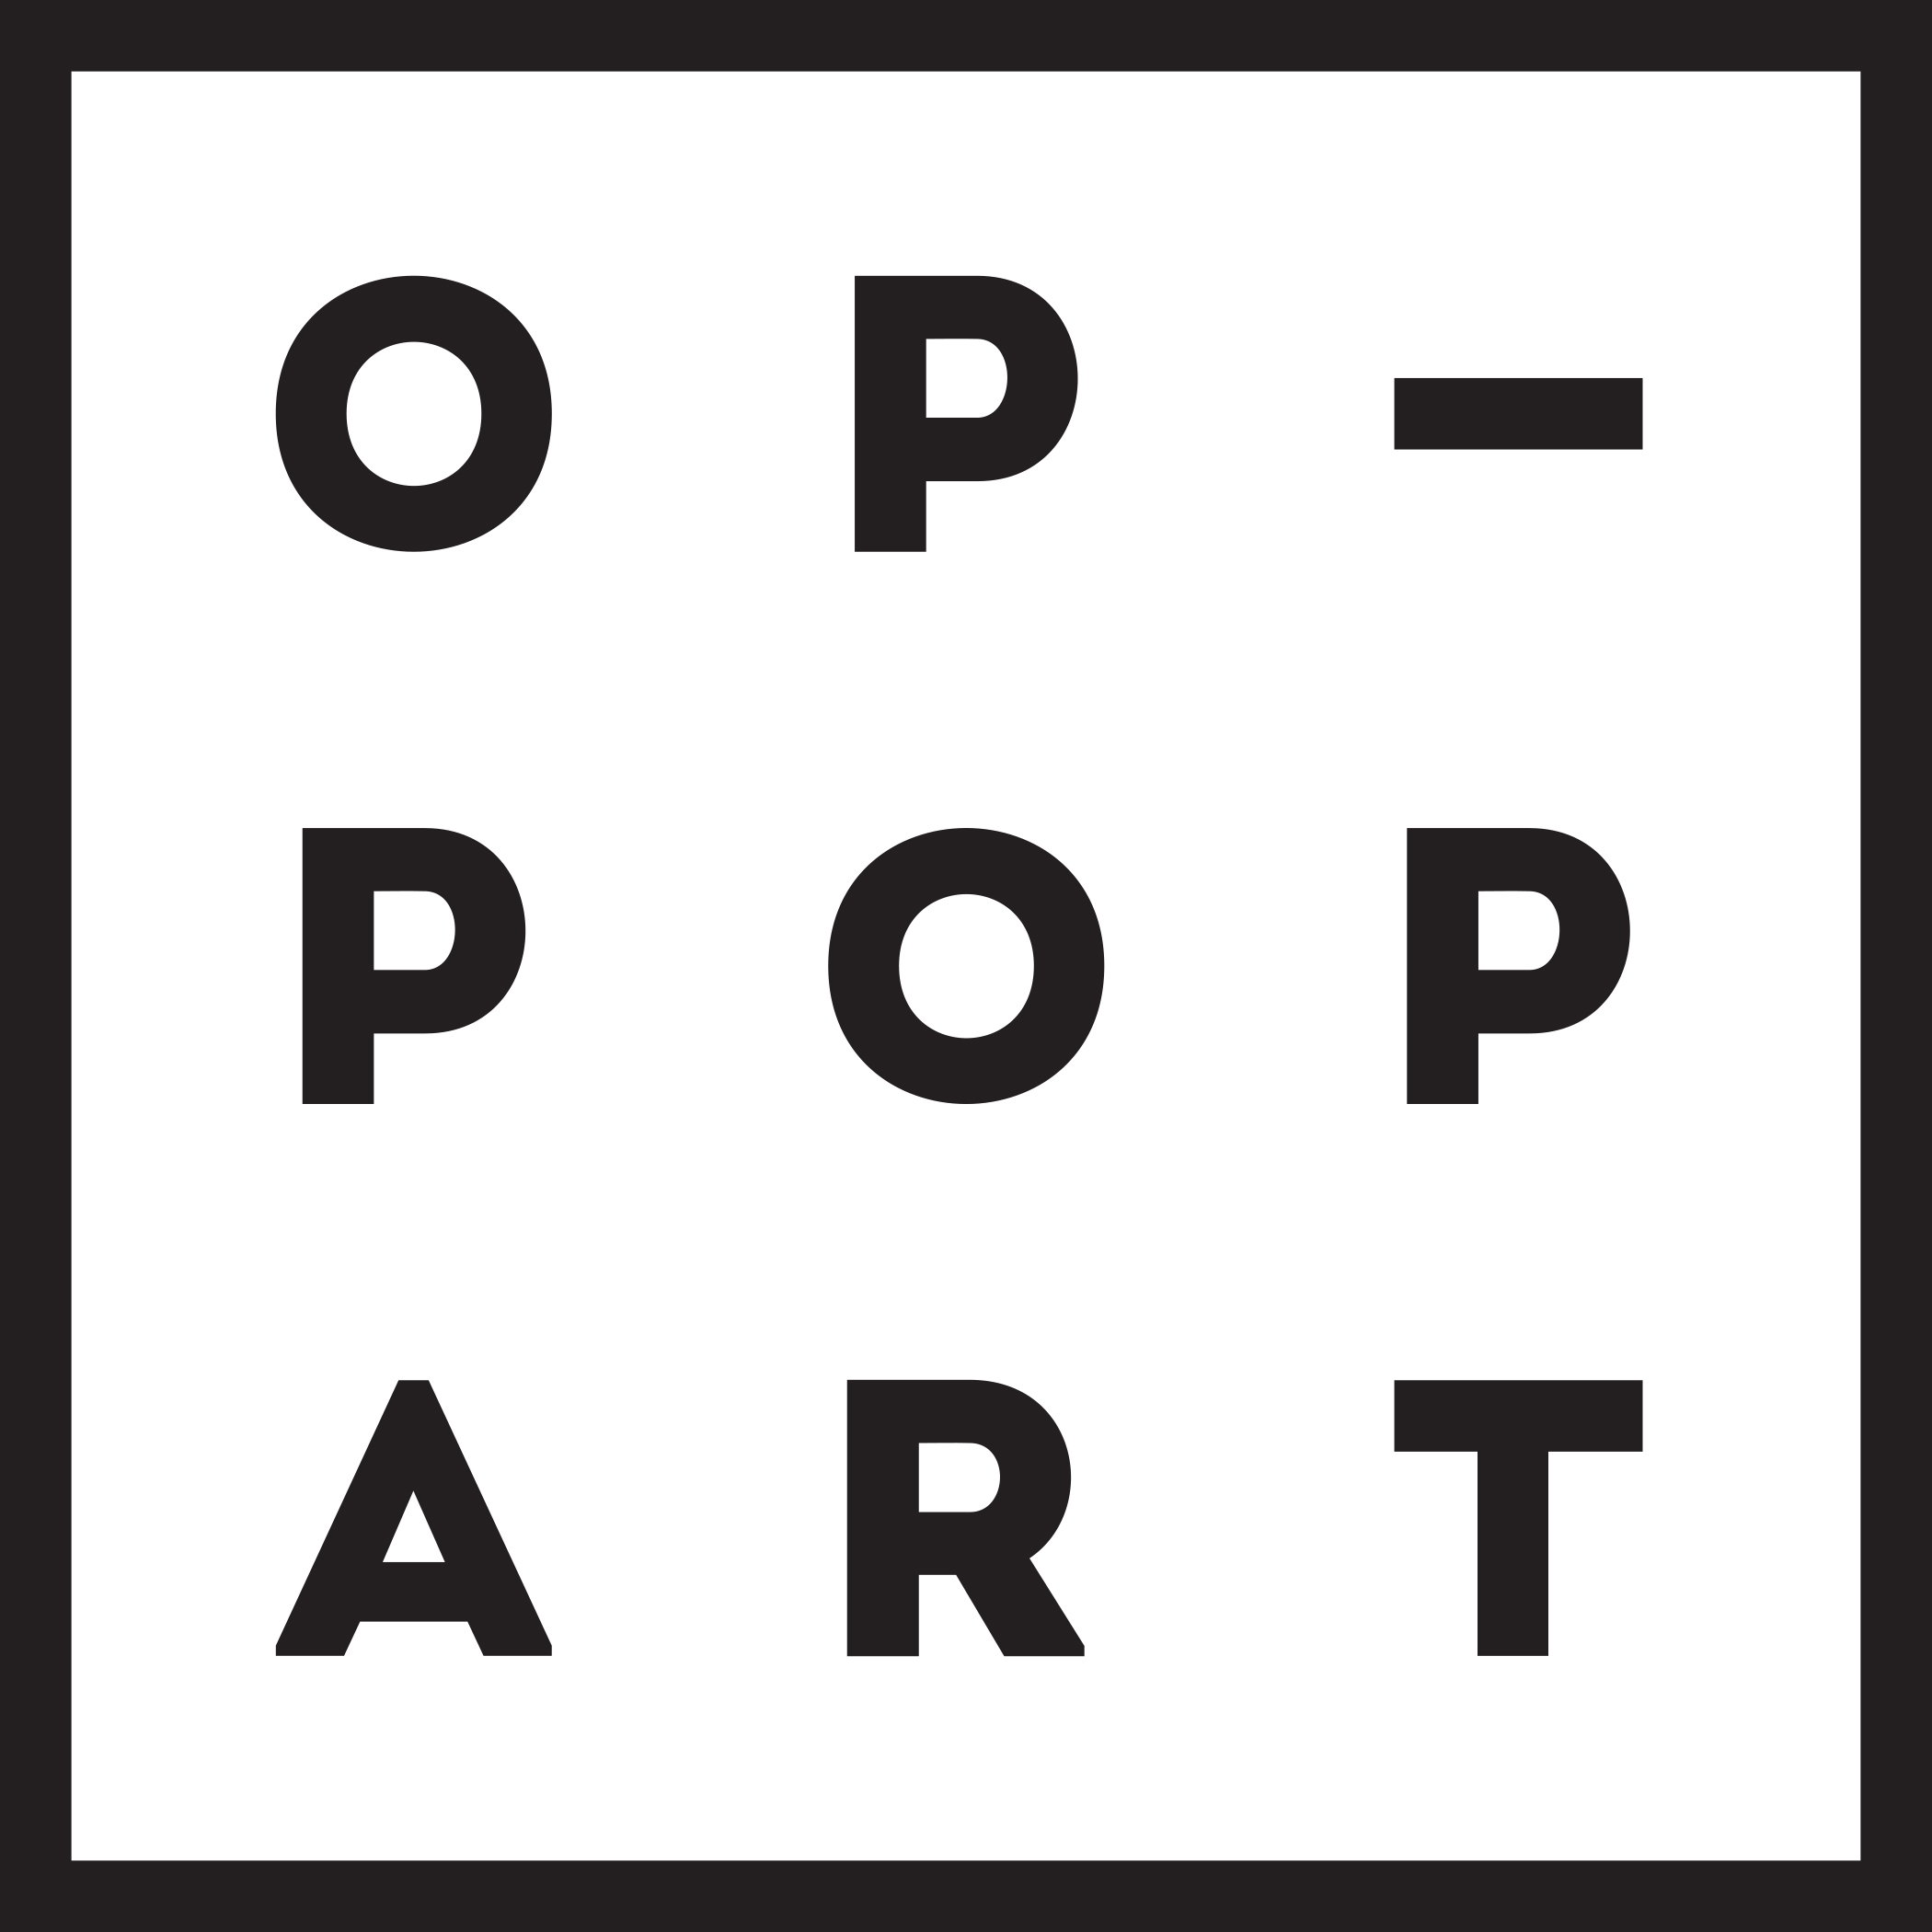 Op pop. Op Pop Art школа. Op Pop Art логотип. Школа популярного искусства op-Pop-Art. Op Pop Art Академия.